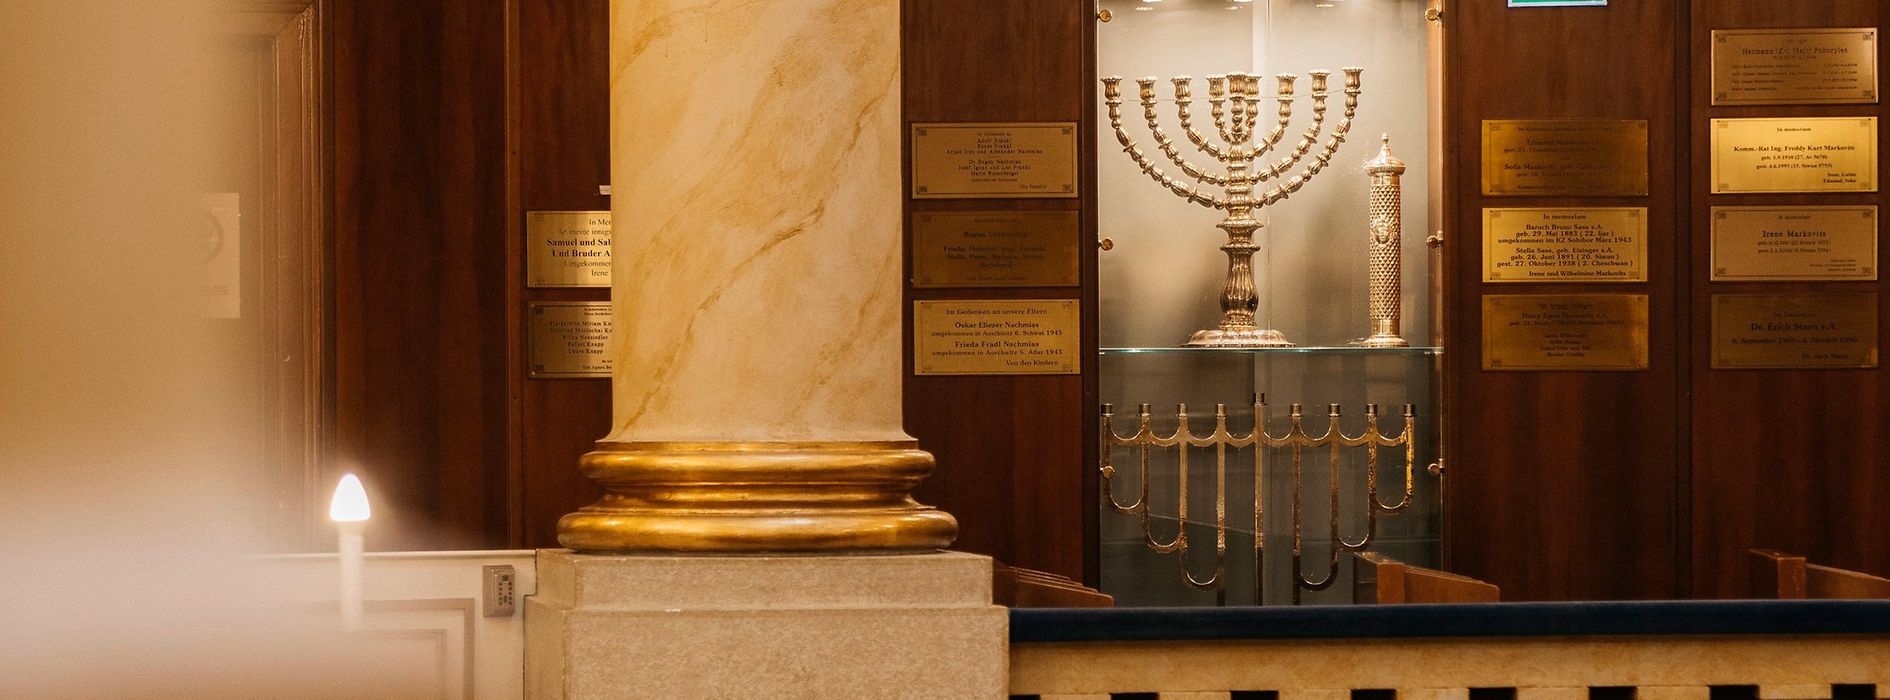 Dettaglio della sinagoga